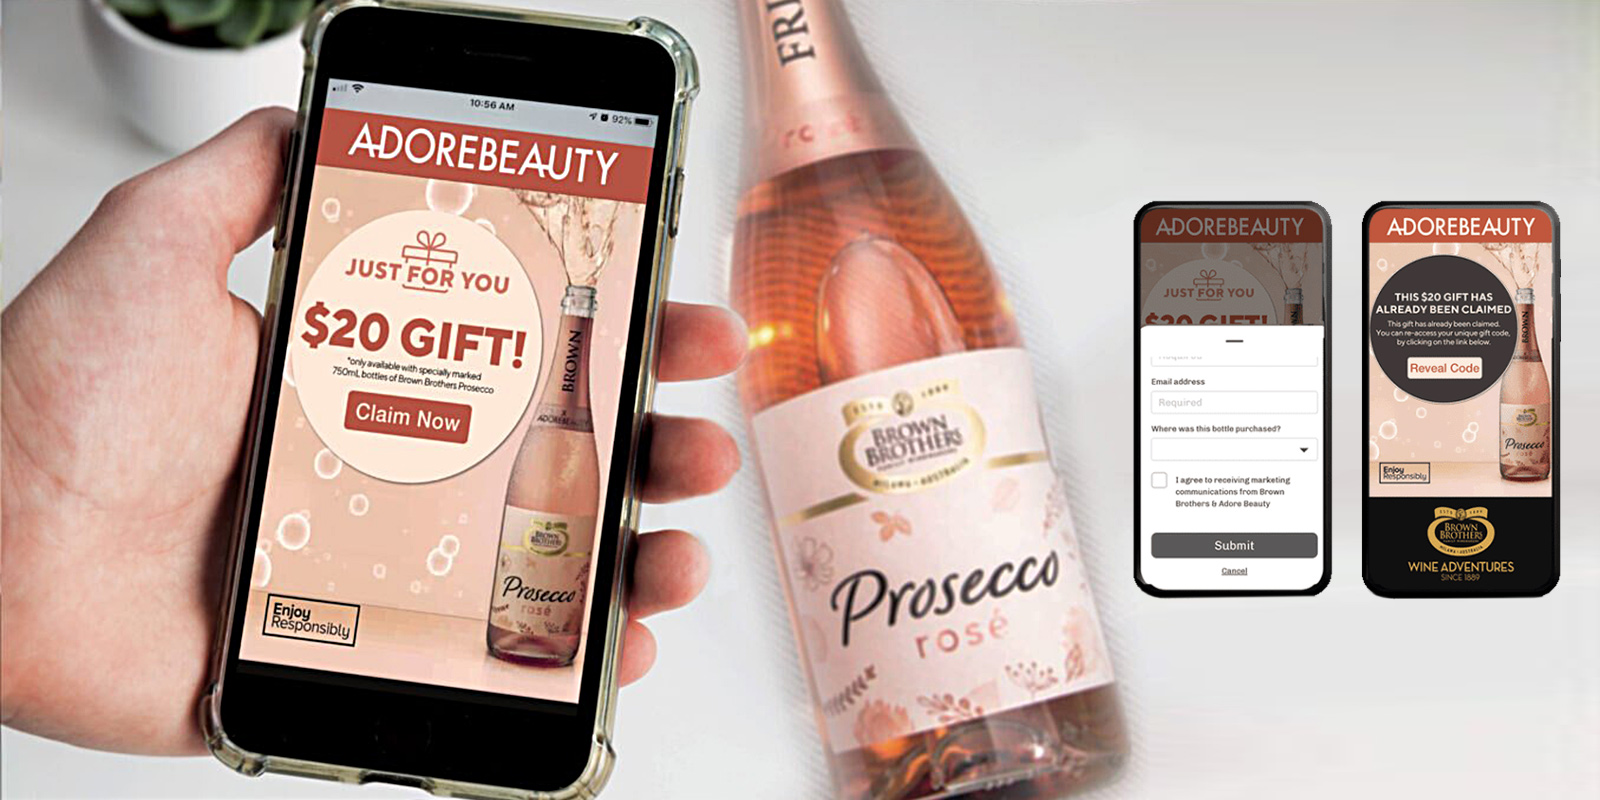 Acercamiento a manos de hombre escaneando con un smartphone la etiqueta de una botella de prosecco rosé Brown Brothers. En la pantalla se ve un vale de regalo.